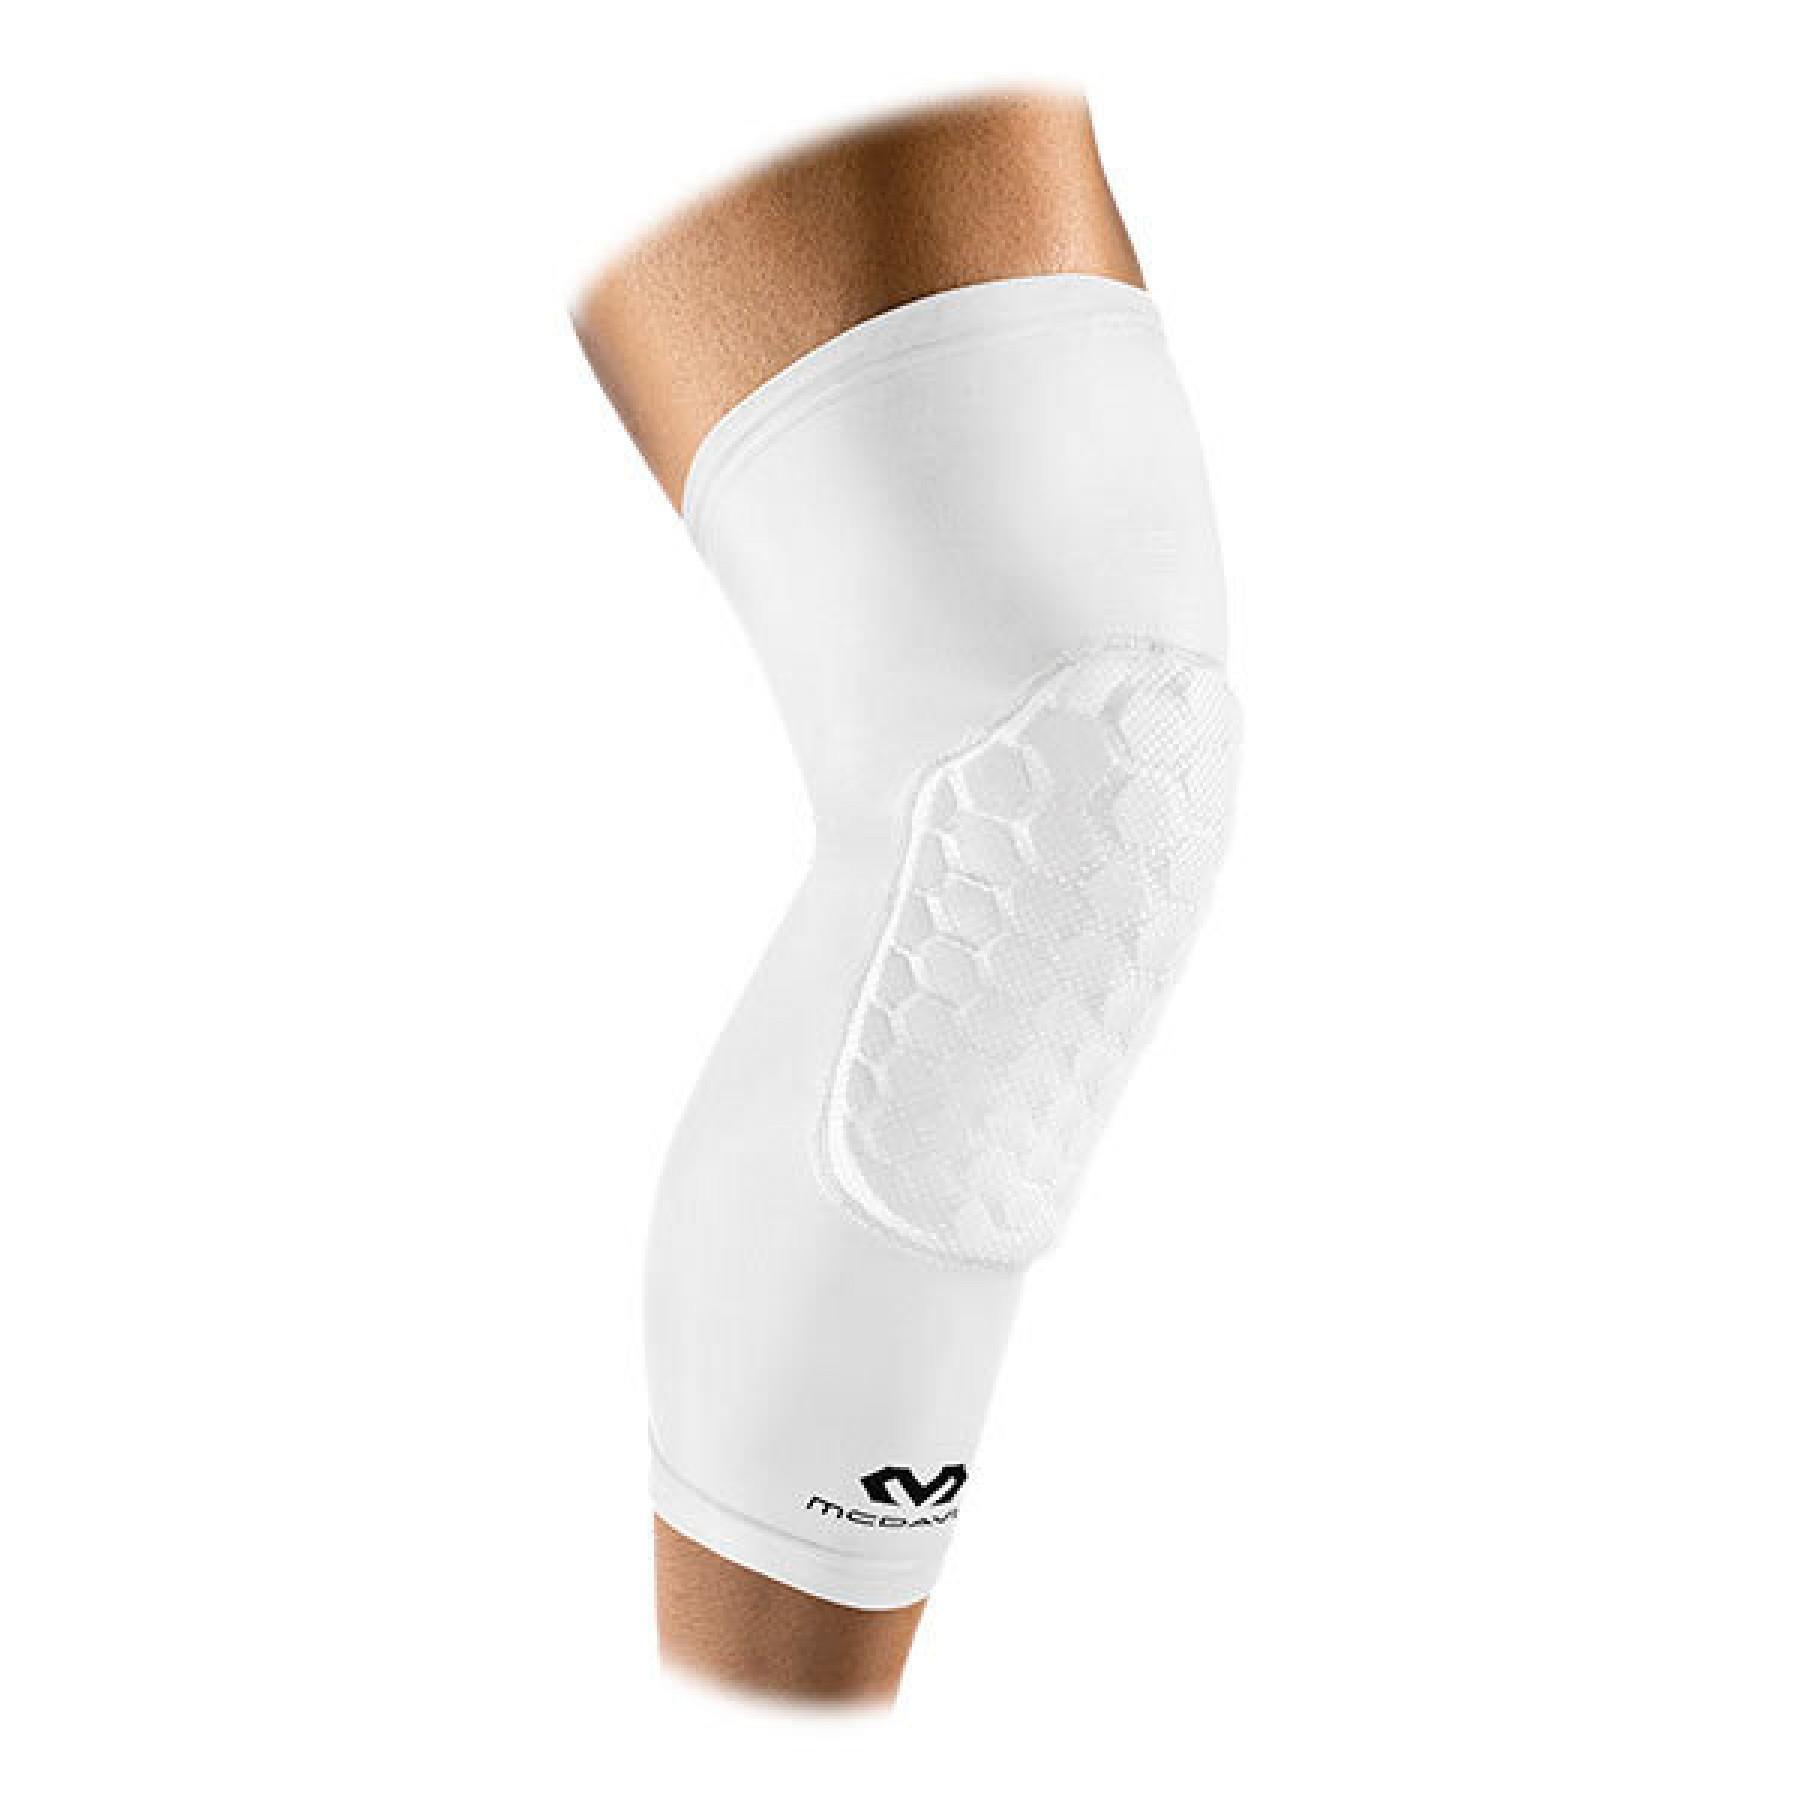 geef de bloem water Kip Productie Knee protection sleeves McDavid hex - McDavid - Brands - Equipment